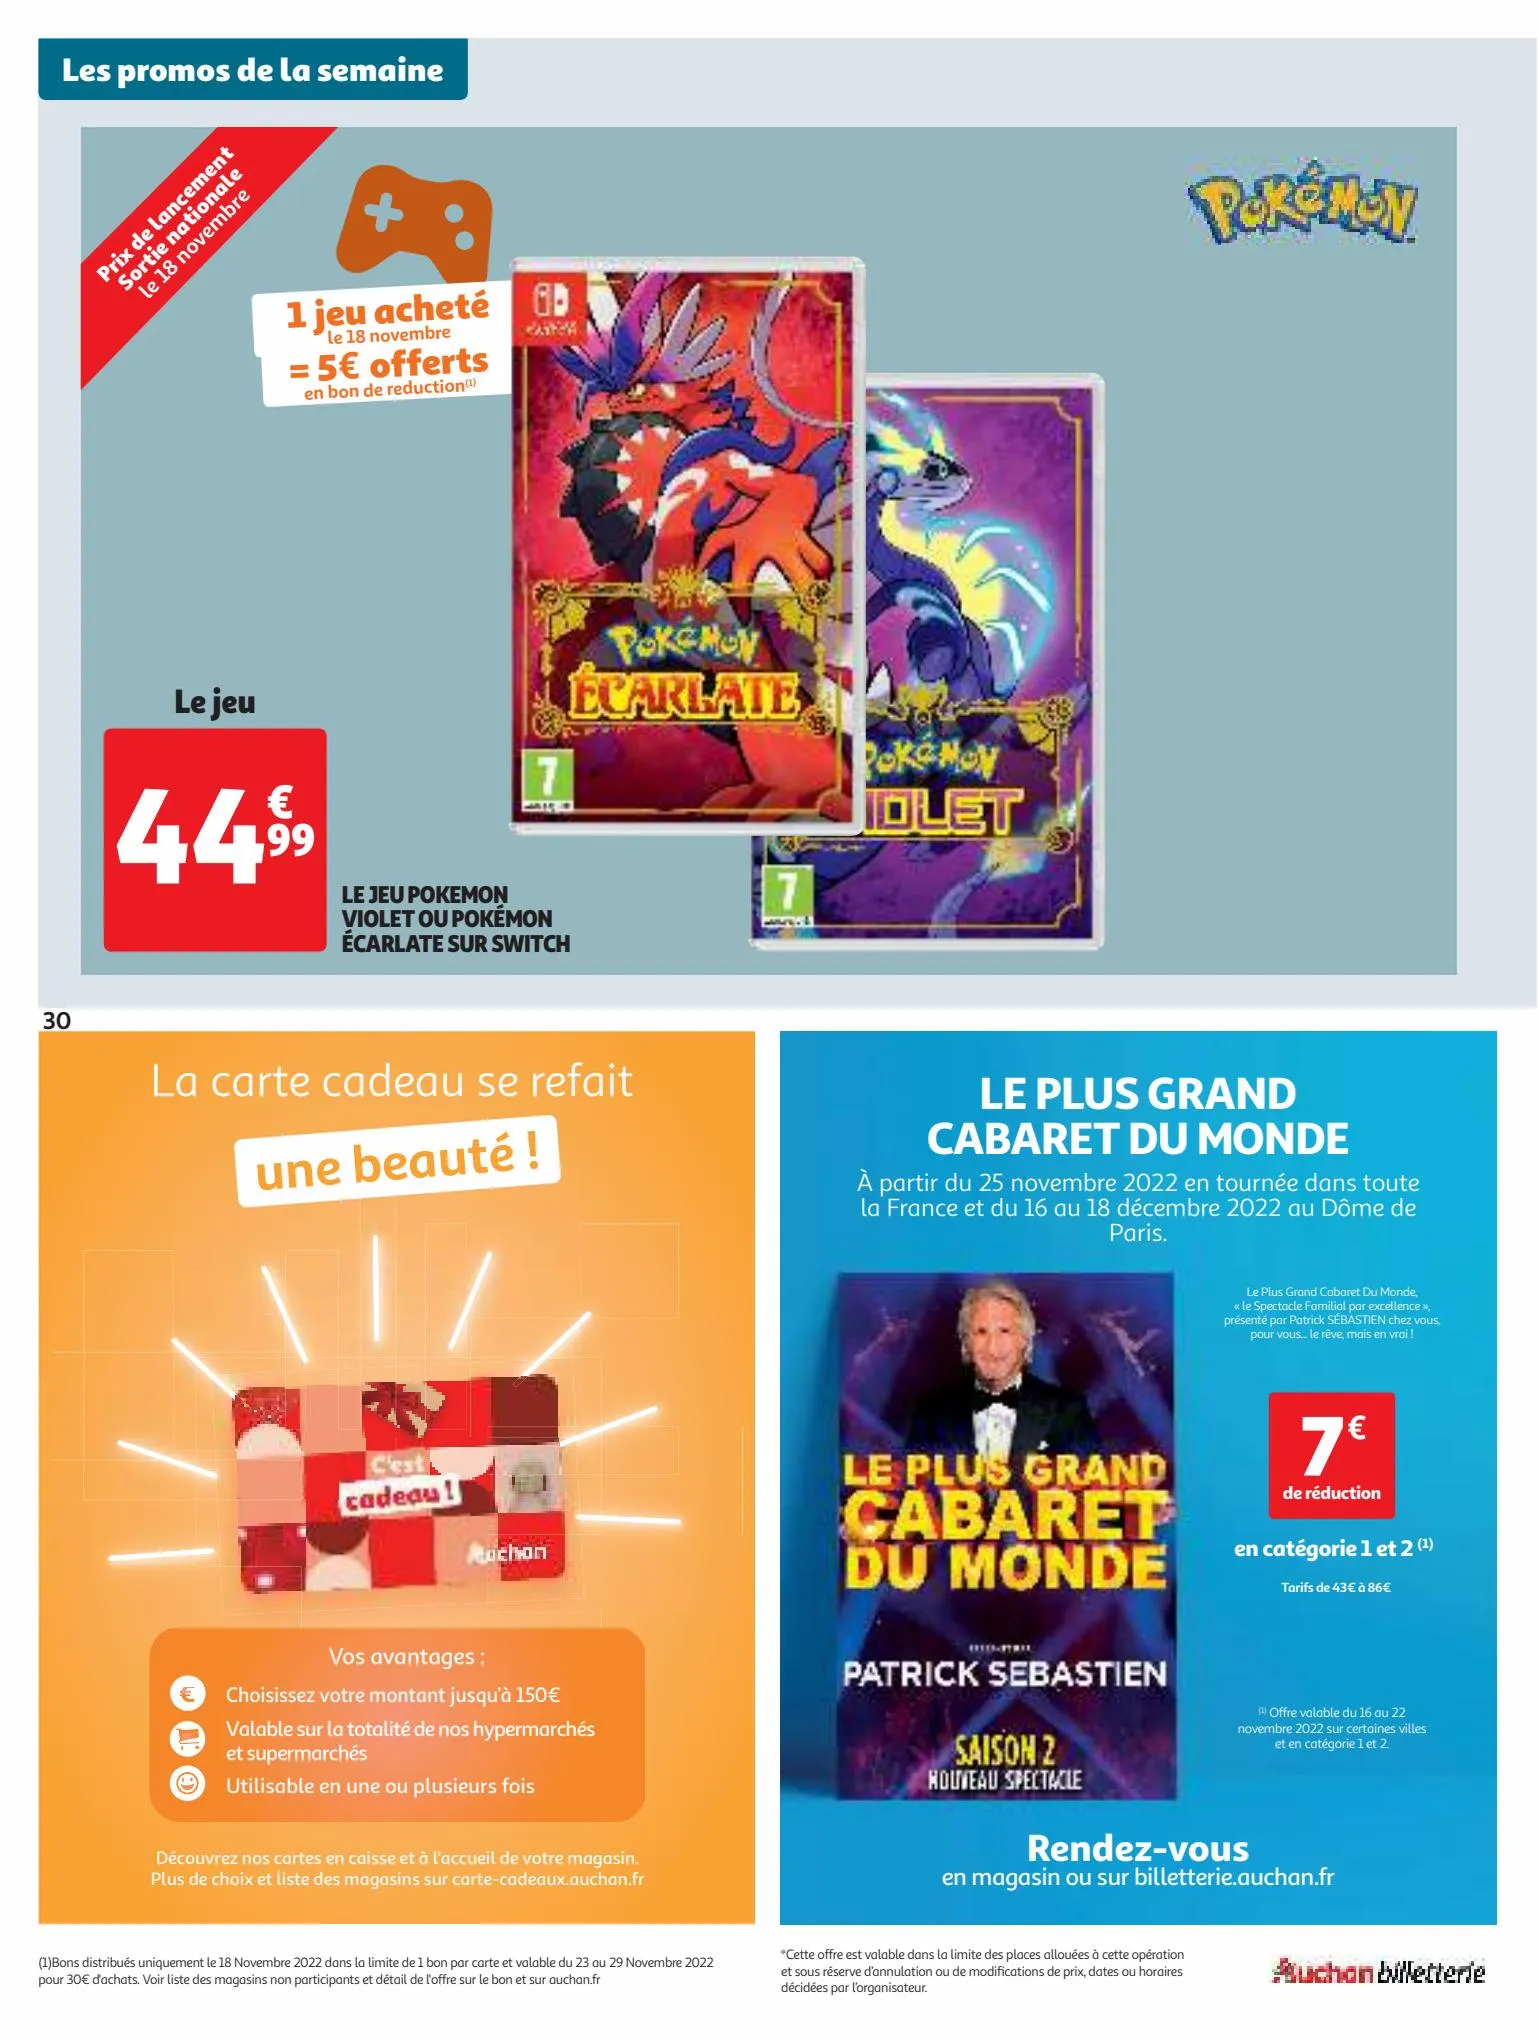 Catalogue 25 jours Auchan, page 00030